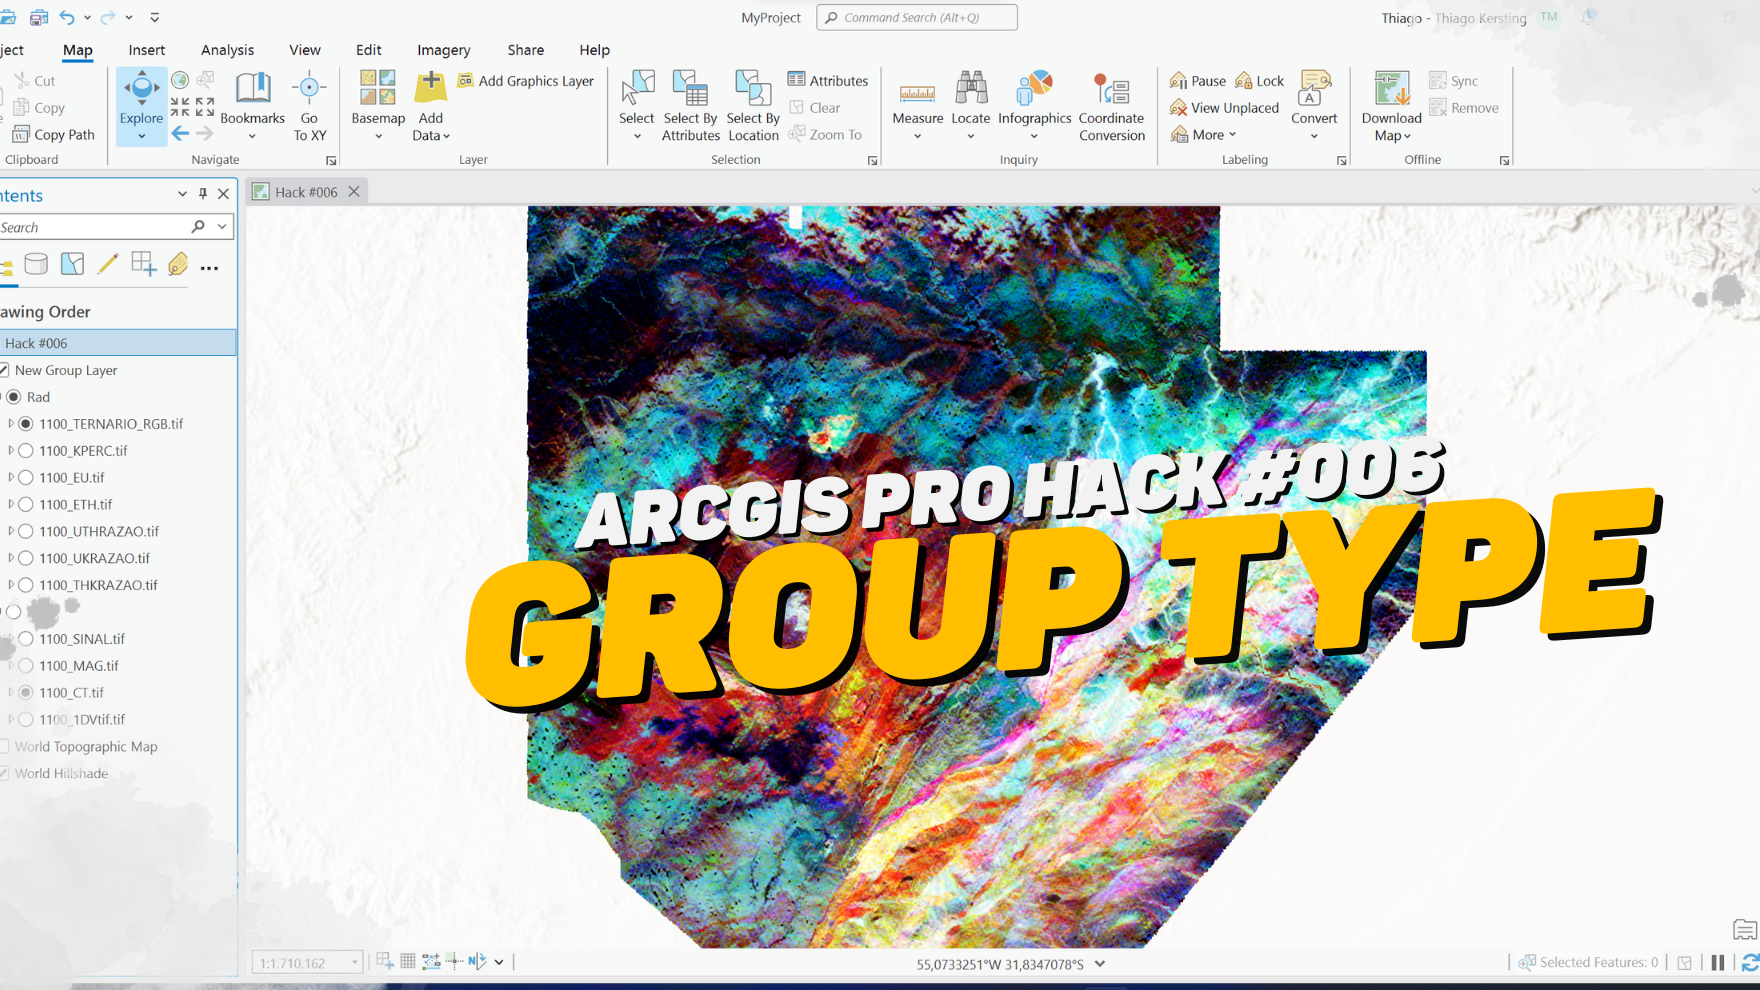 Você está visualizando atualmente ArcGIS Pro Hack #006 – Group Type